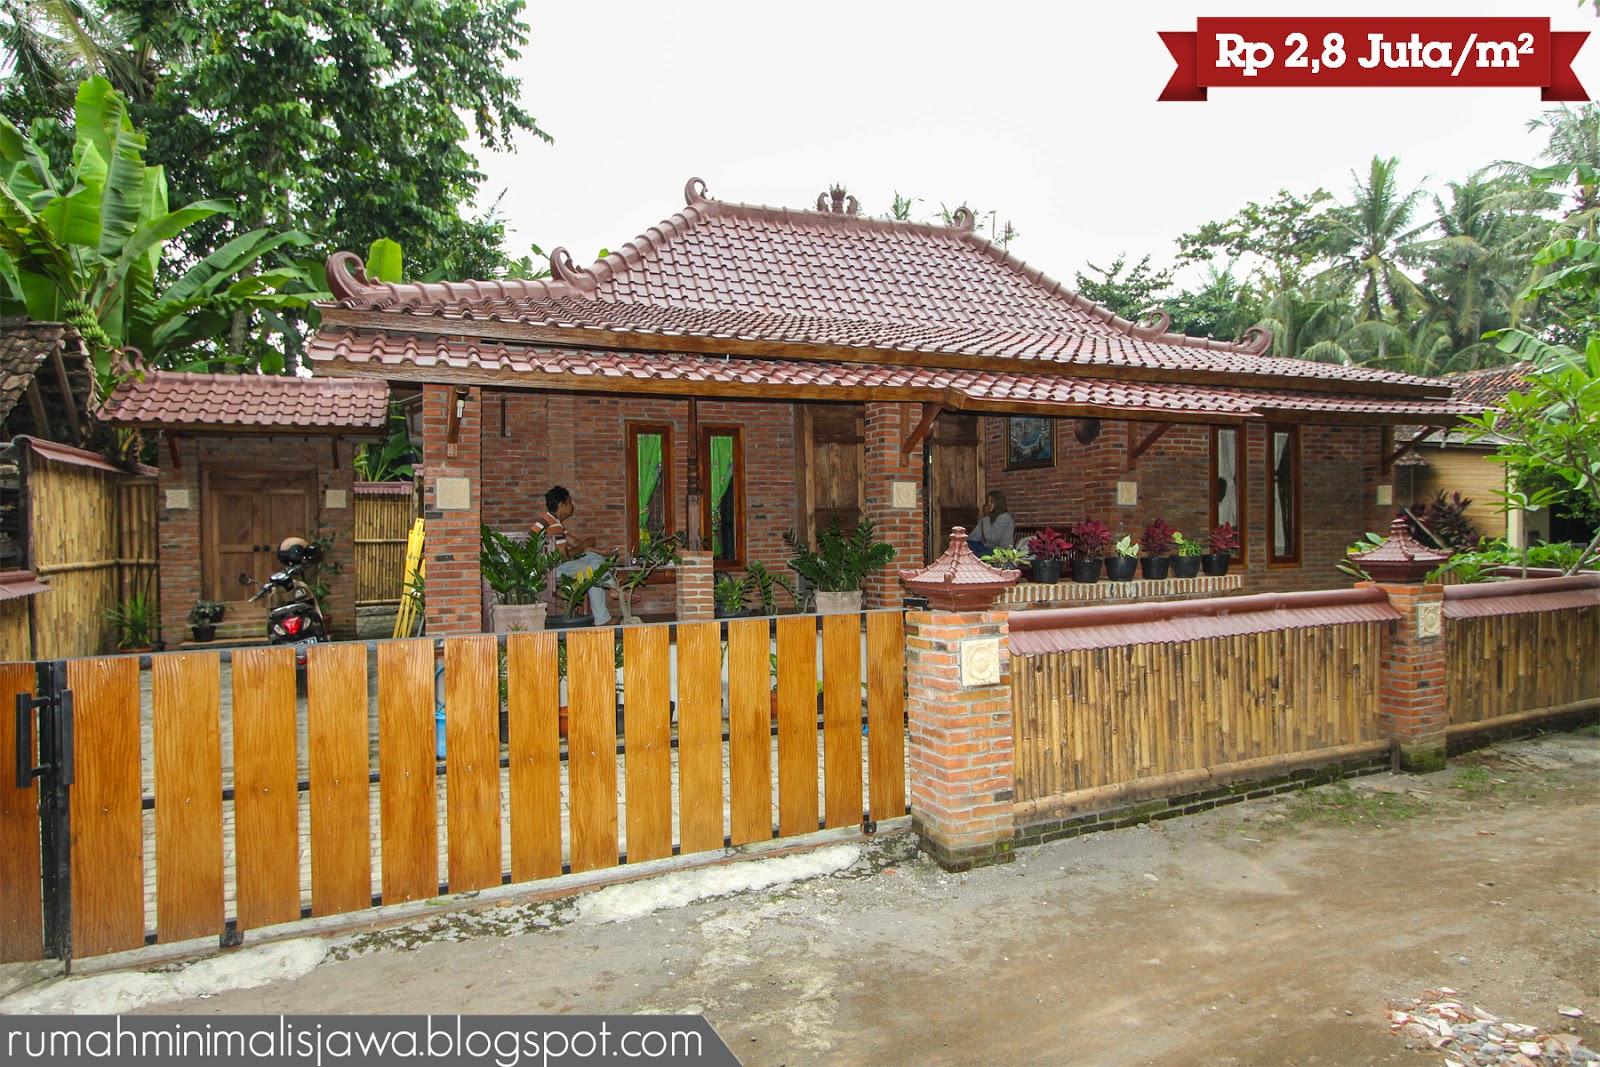 Paket Rumah Idaman #2 - Rumah Minimalis Jawa